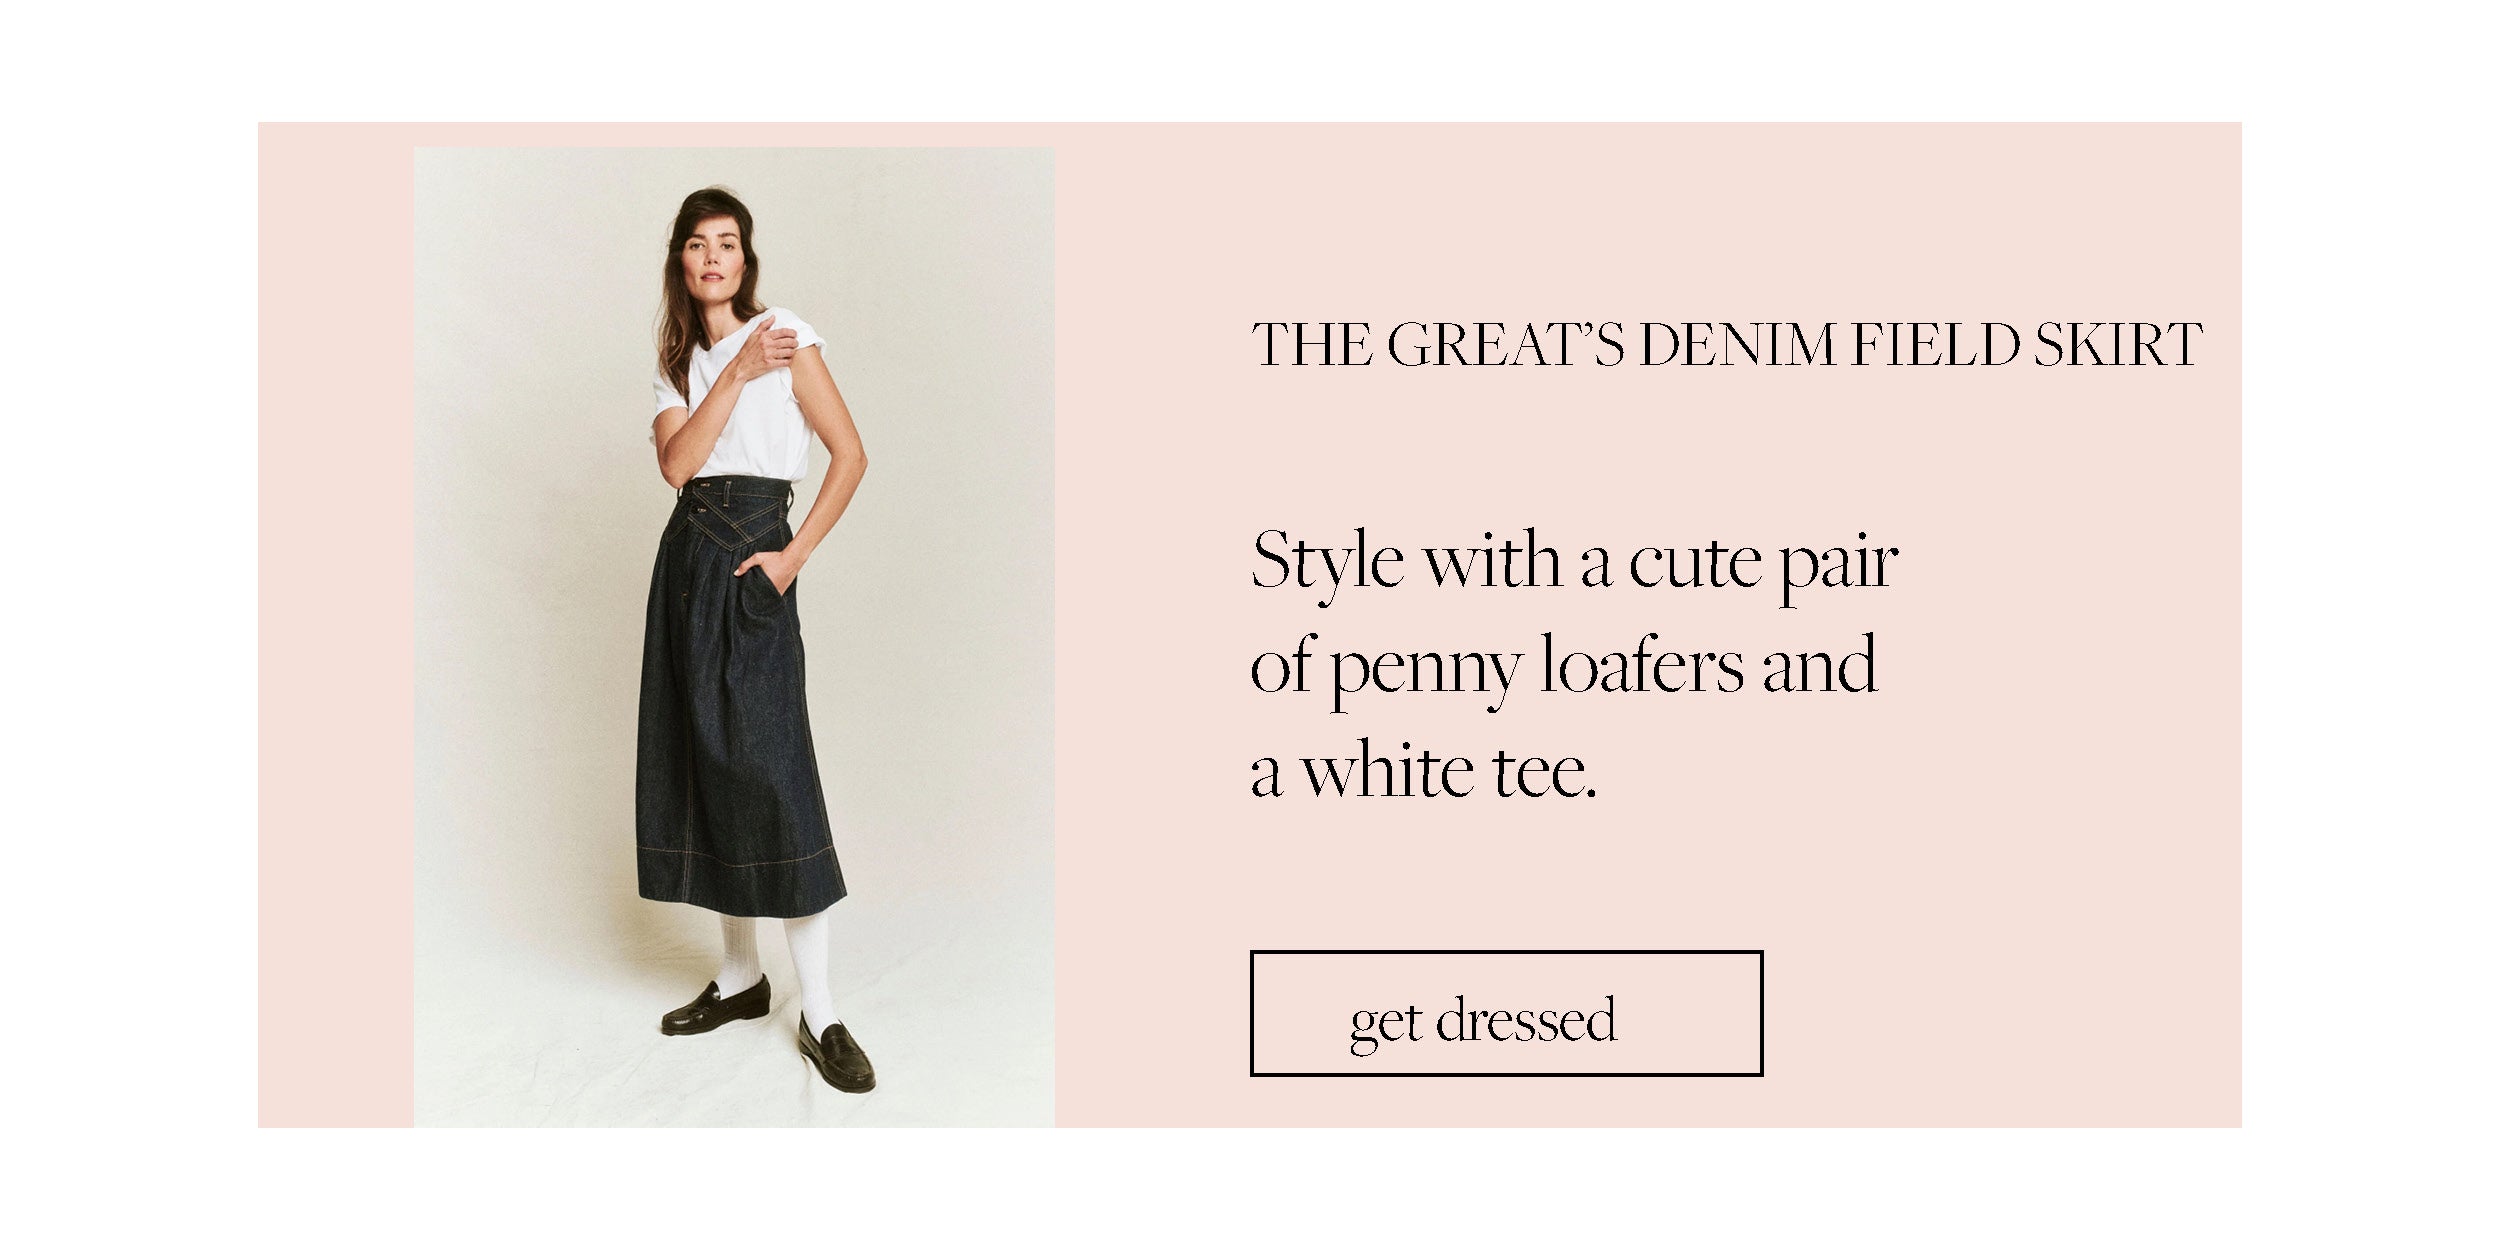 elsie green shop gal guide september the great denim skirt